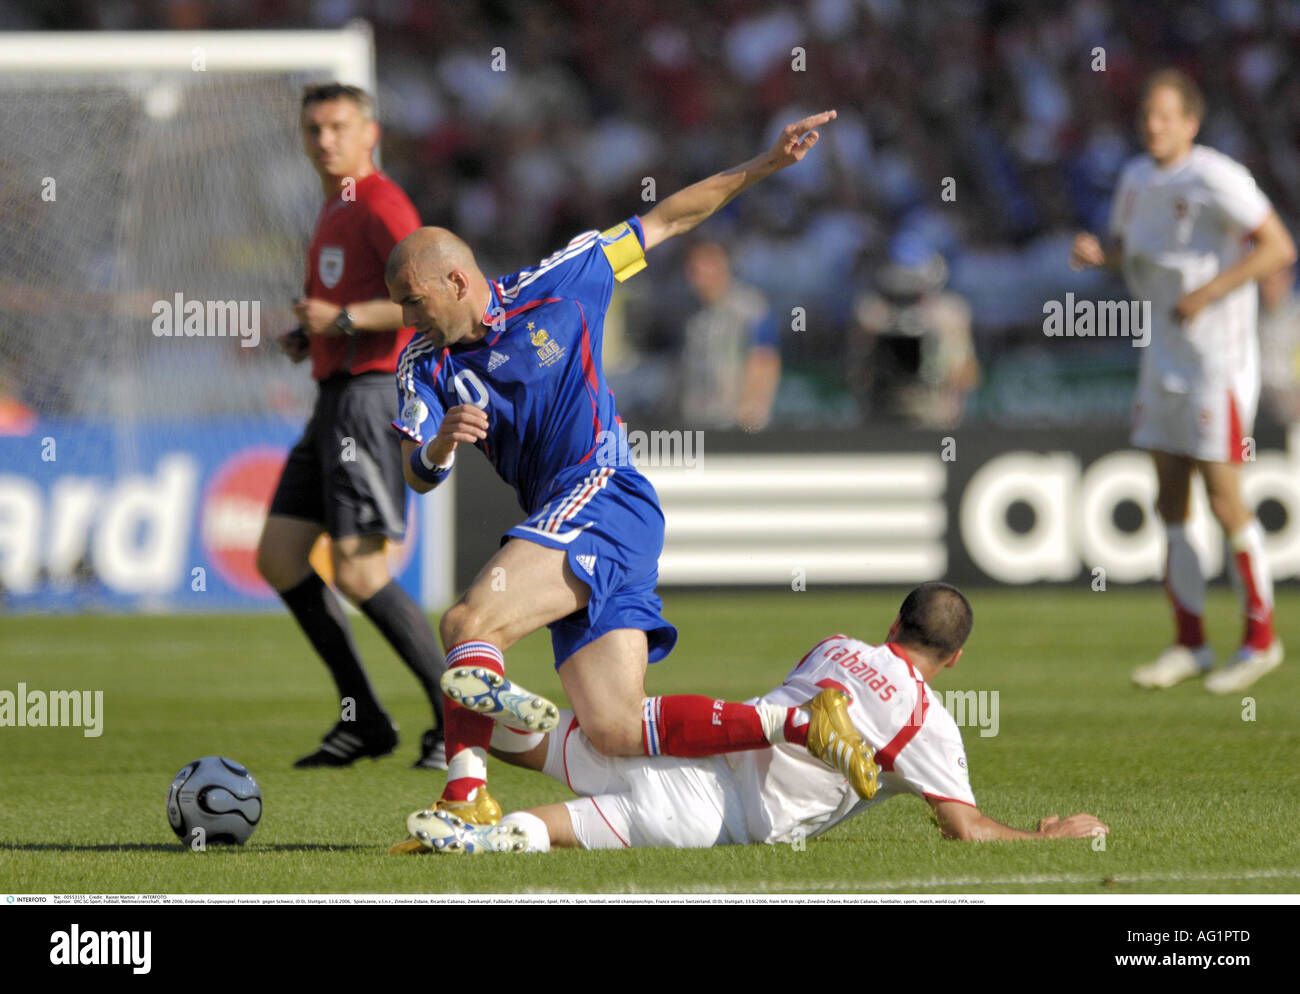 Sport calcio, campionati del mondo, Francia contro la Svizzera, (0:0), Stoccarda, 13.6.2006, Additional-Rights-Clearance-Info-Not-Available Foto Stock